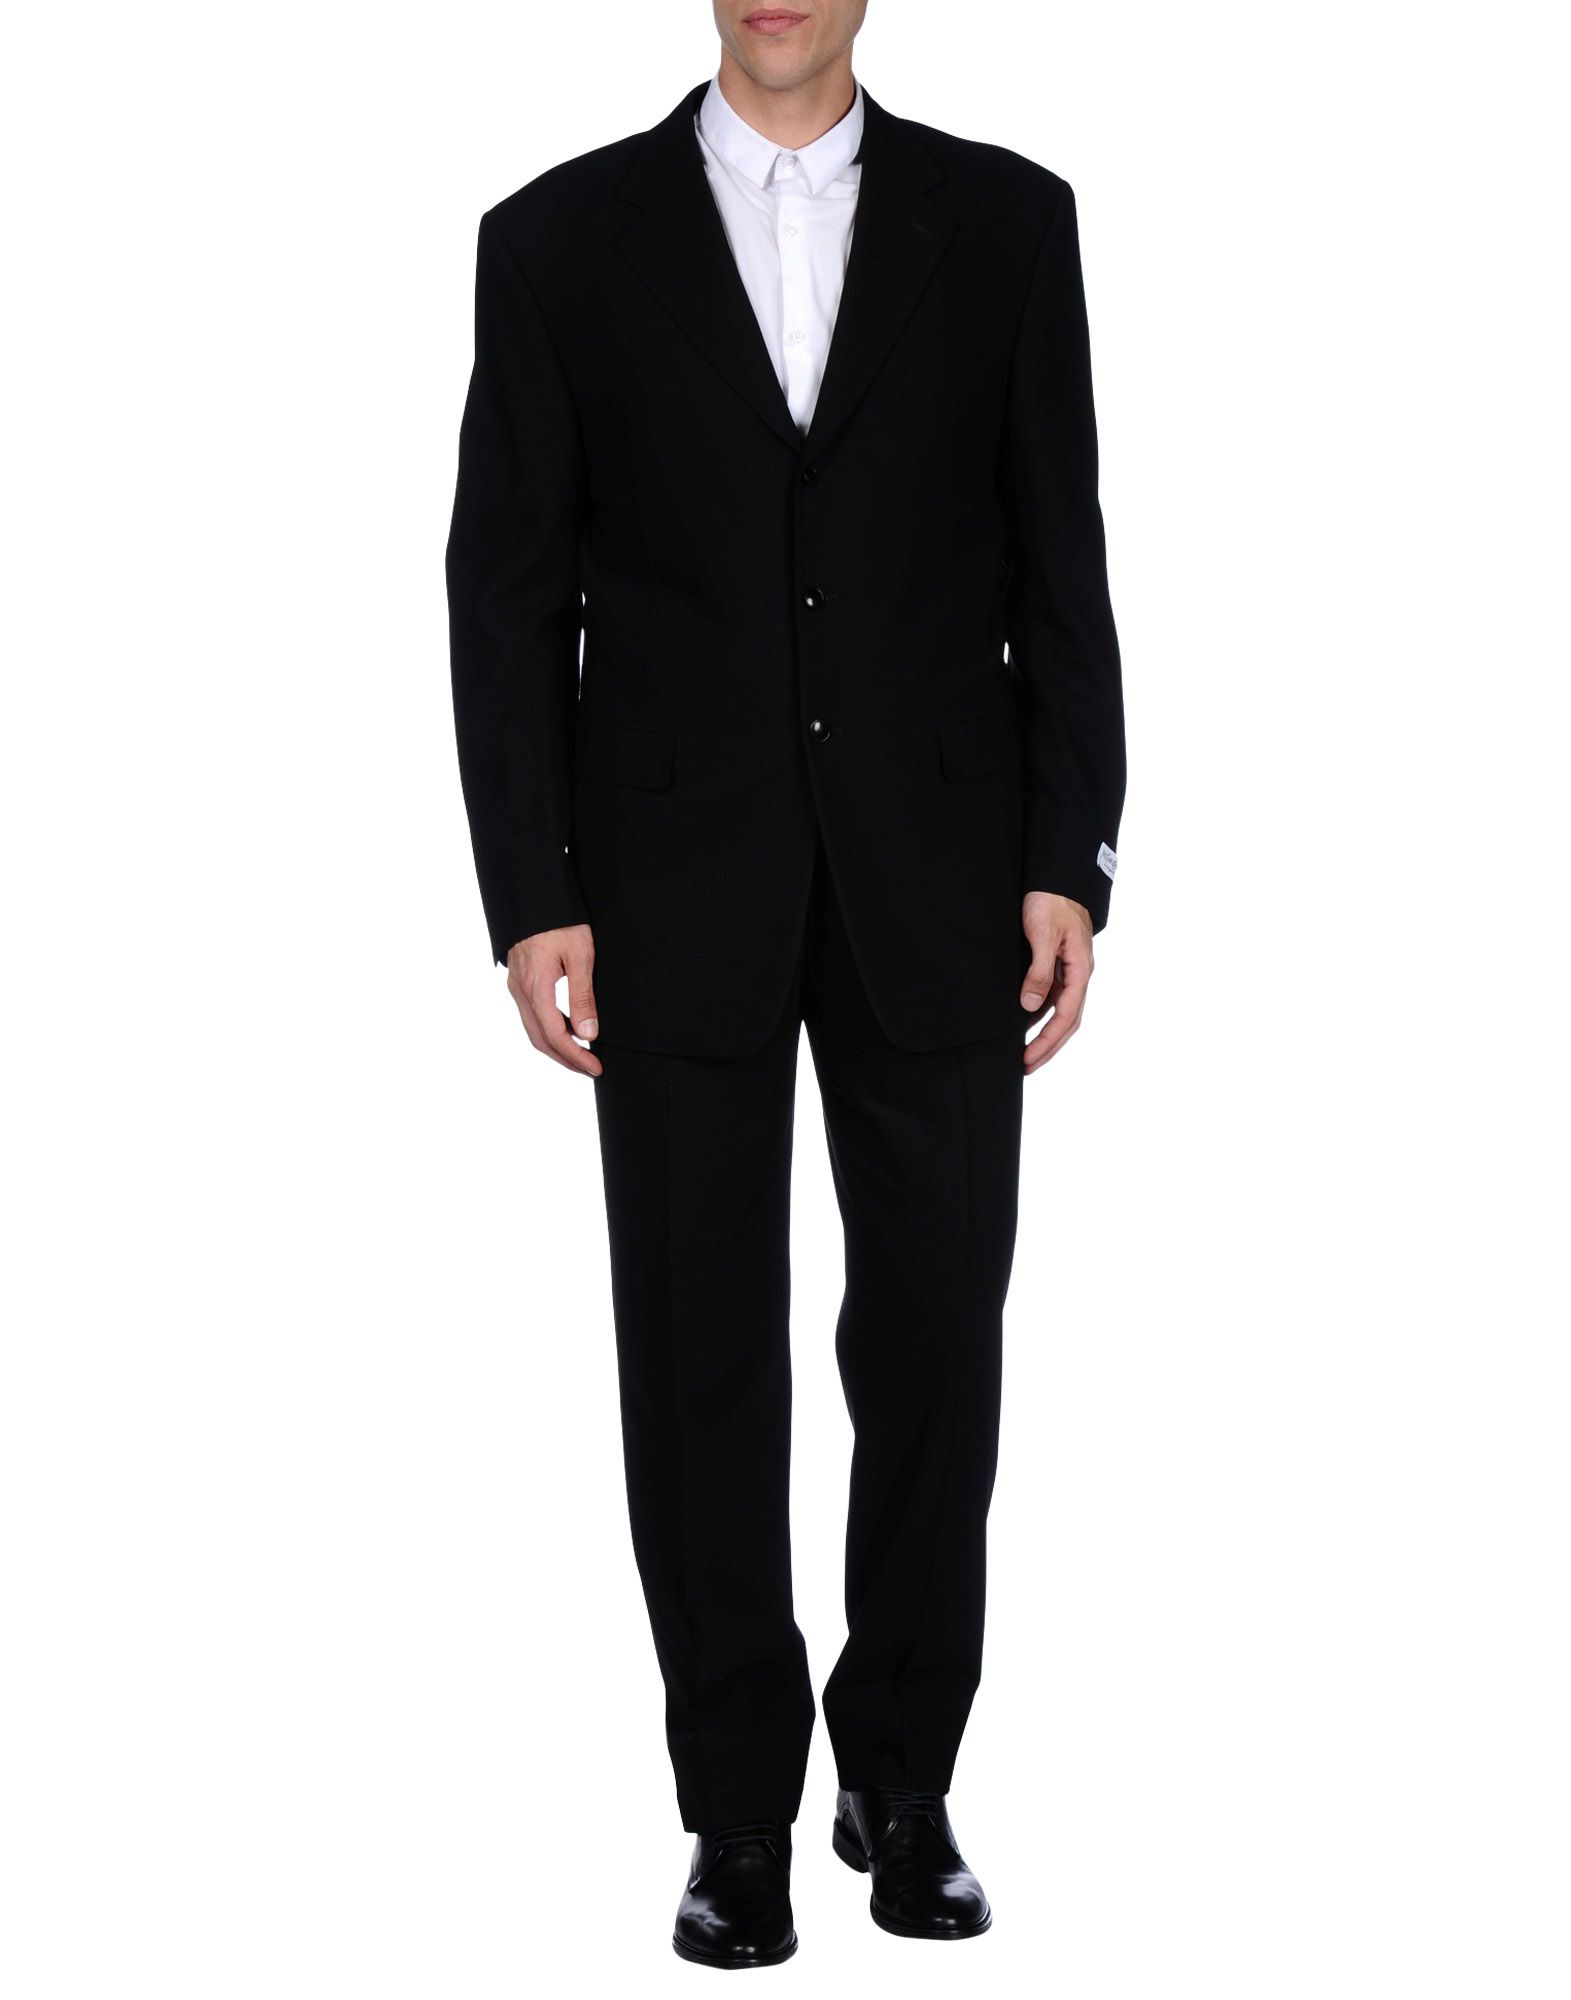 Lyst - Saint Laurent Suit in Black for Men